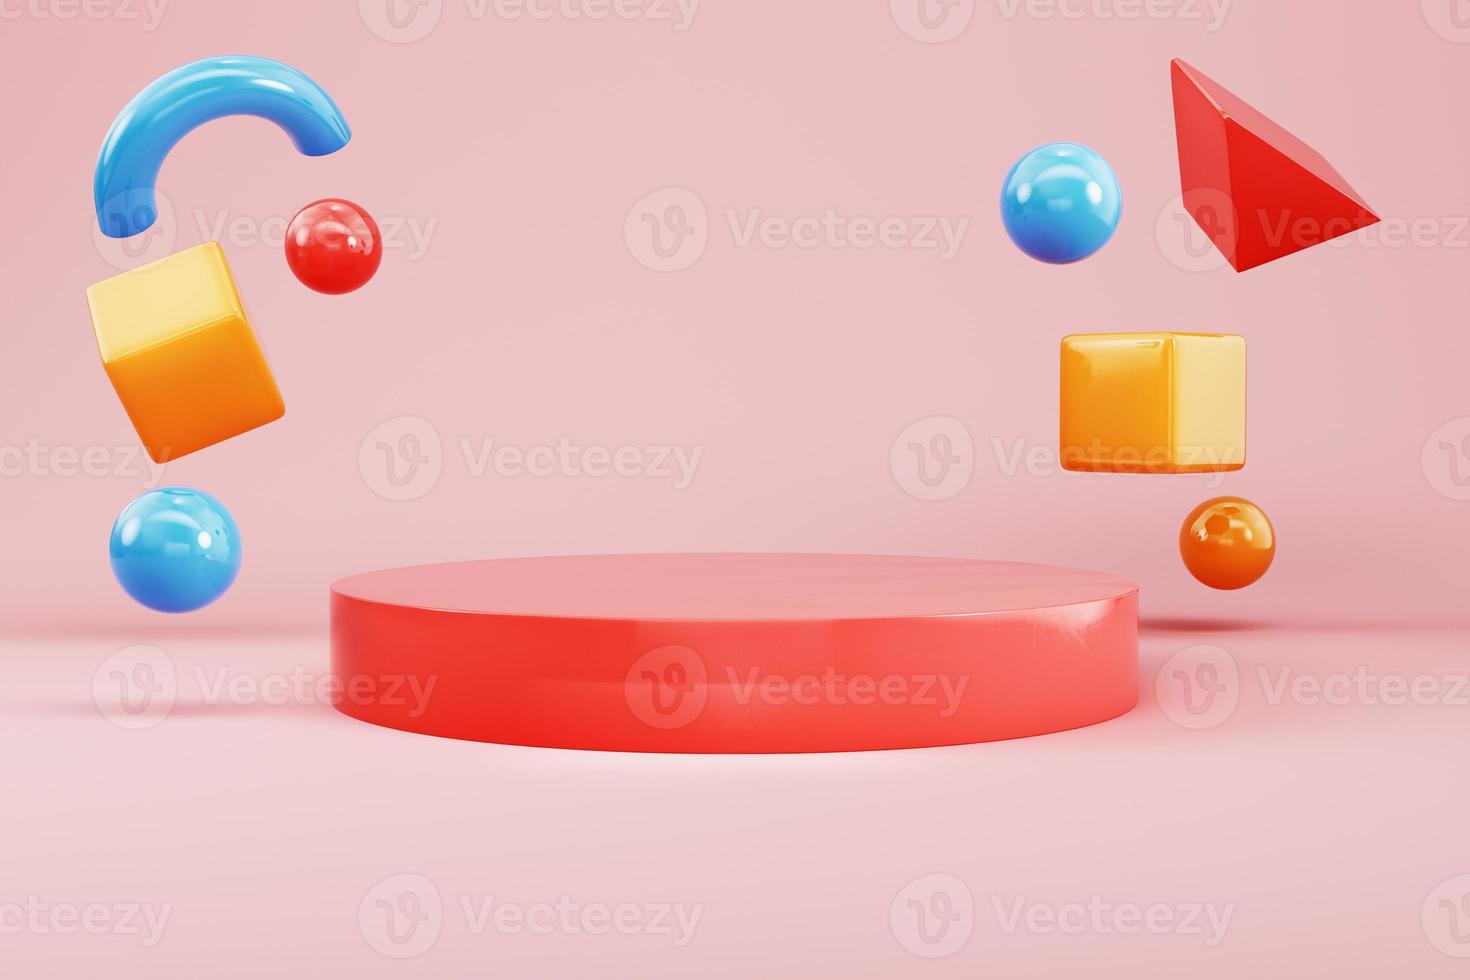 pedestal cilíndrico vermelho com formas geométricas voadoras abstratas voadoras em fundo pastel para exibição de produtos foto